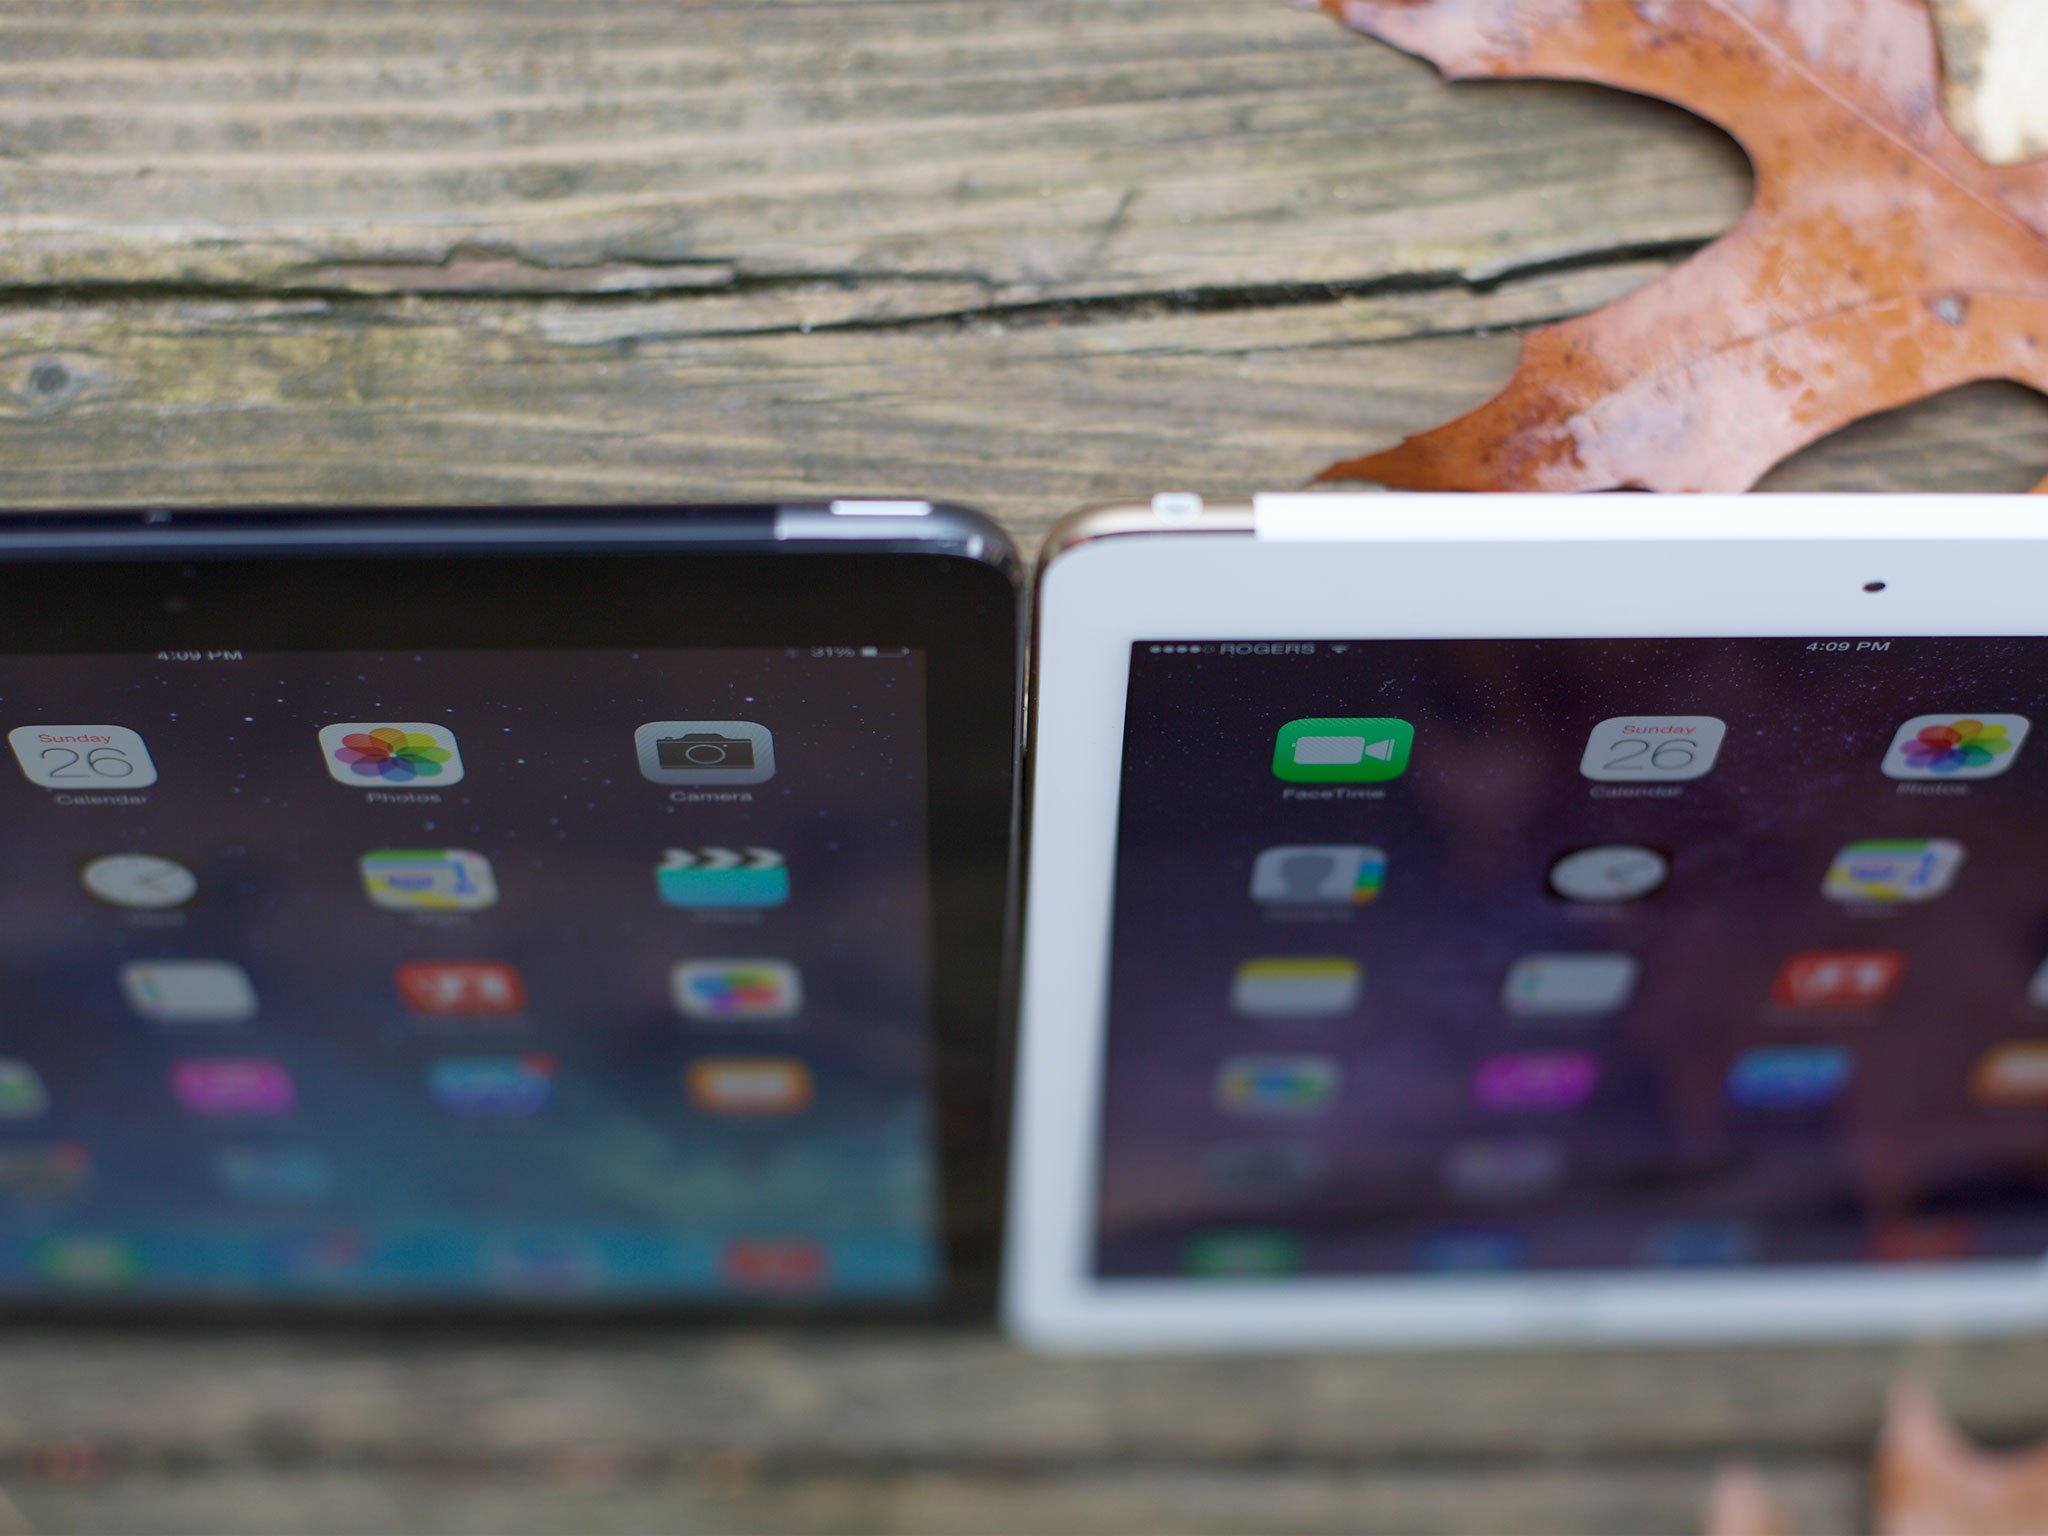 iPad Air vs. iPad Air 2